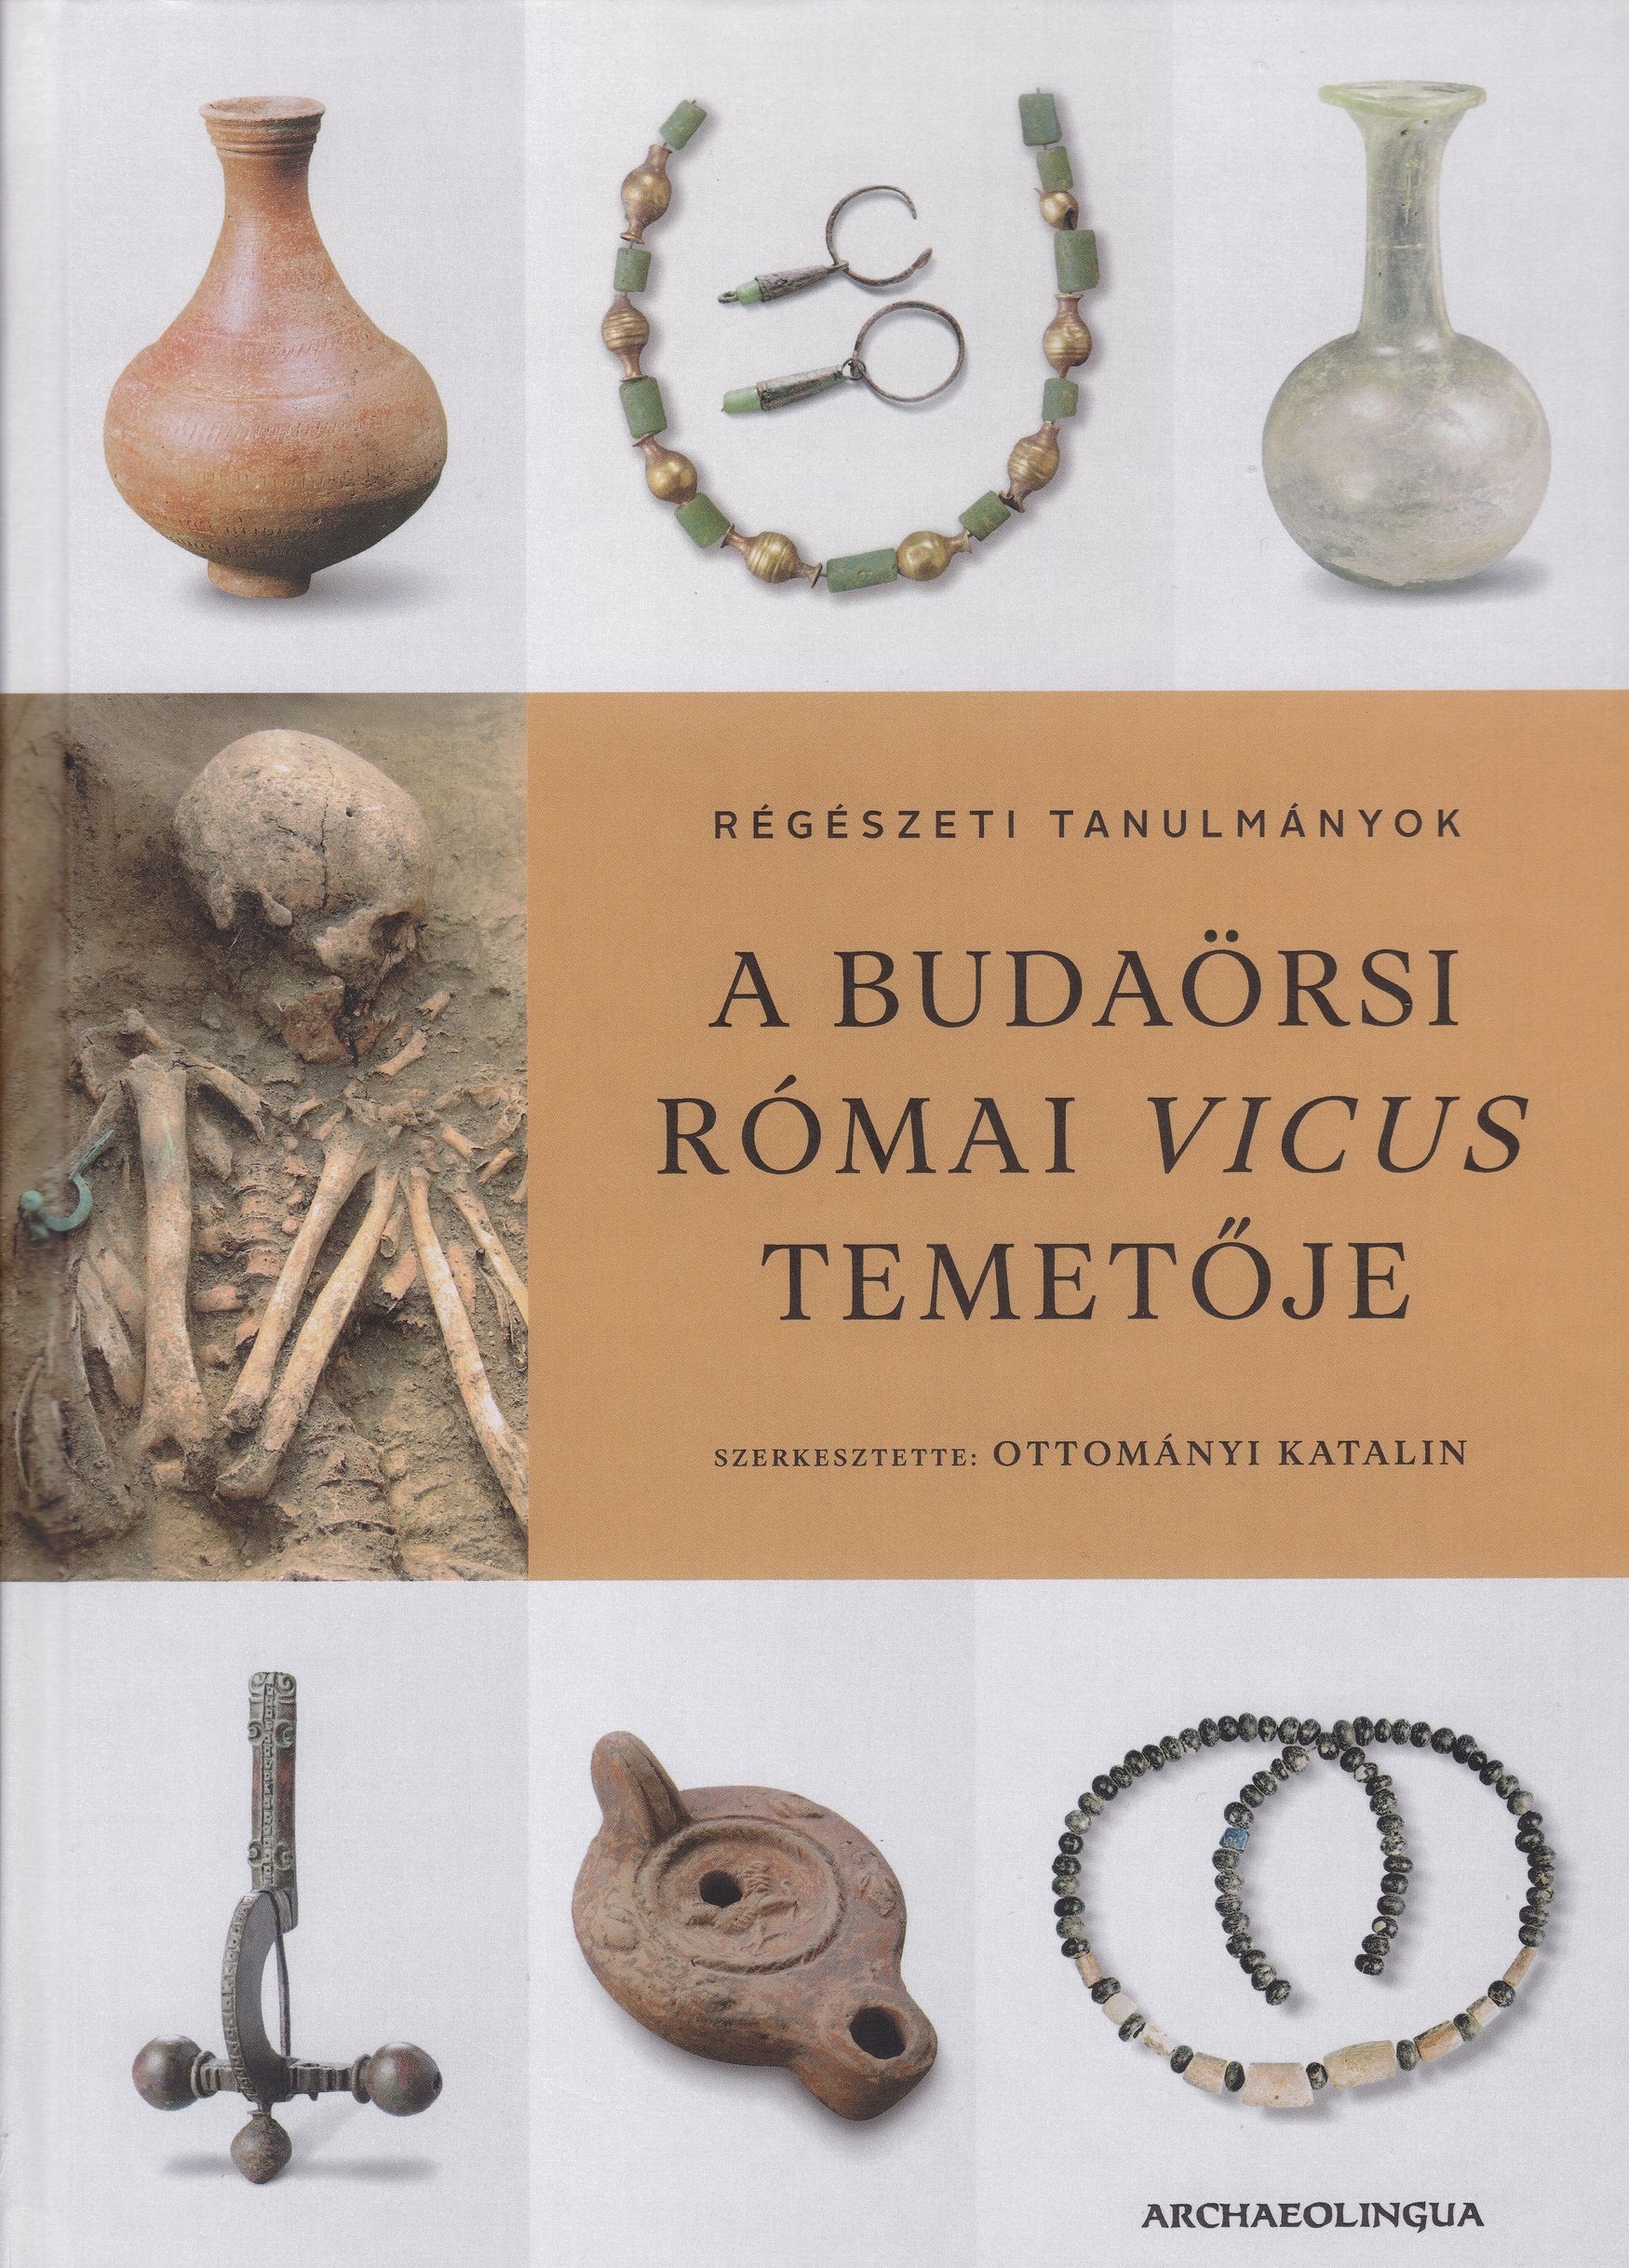 Római vicus Budaörsön 2. kötet: A budaörsi római vicus temetője. Régészeti tanulmányok (Rippl-Rónai Múzeum CC BY-NC-ND)